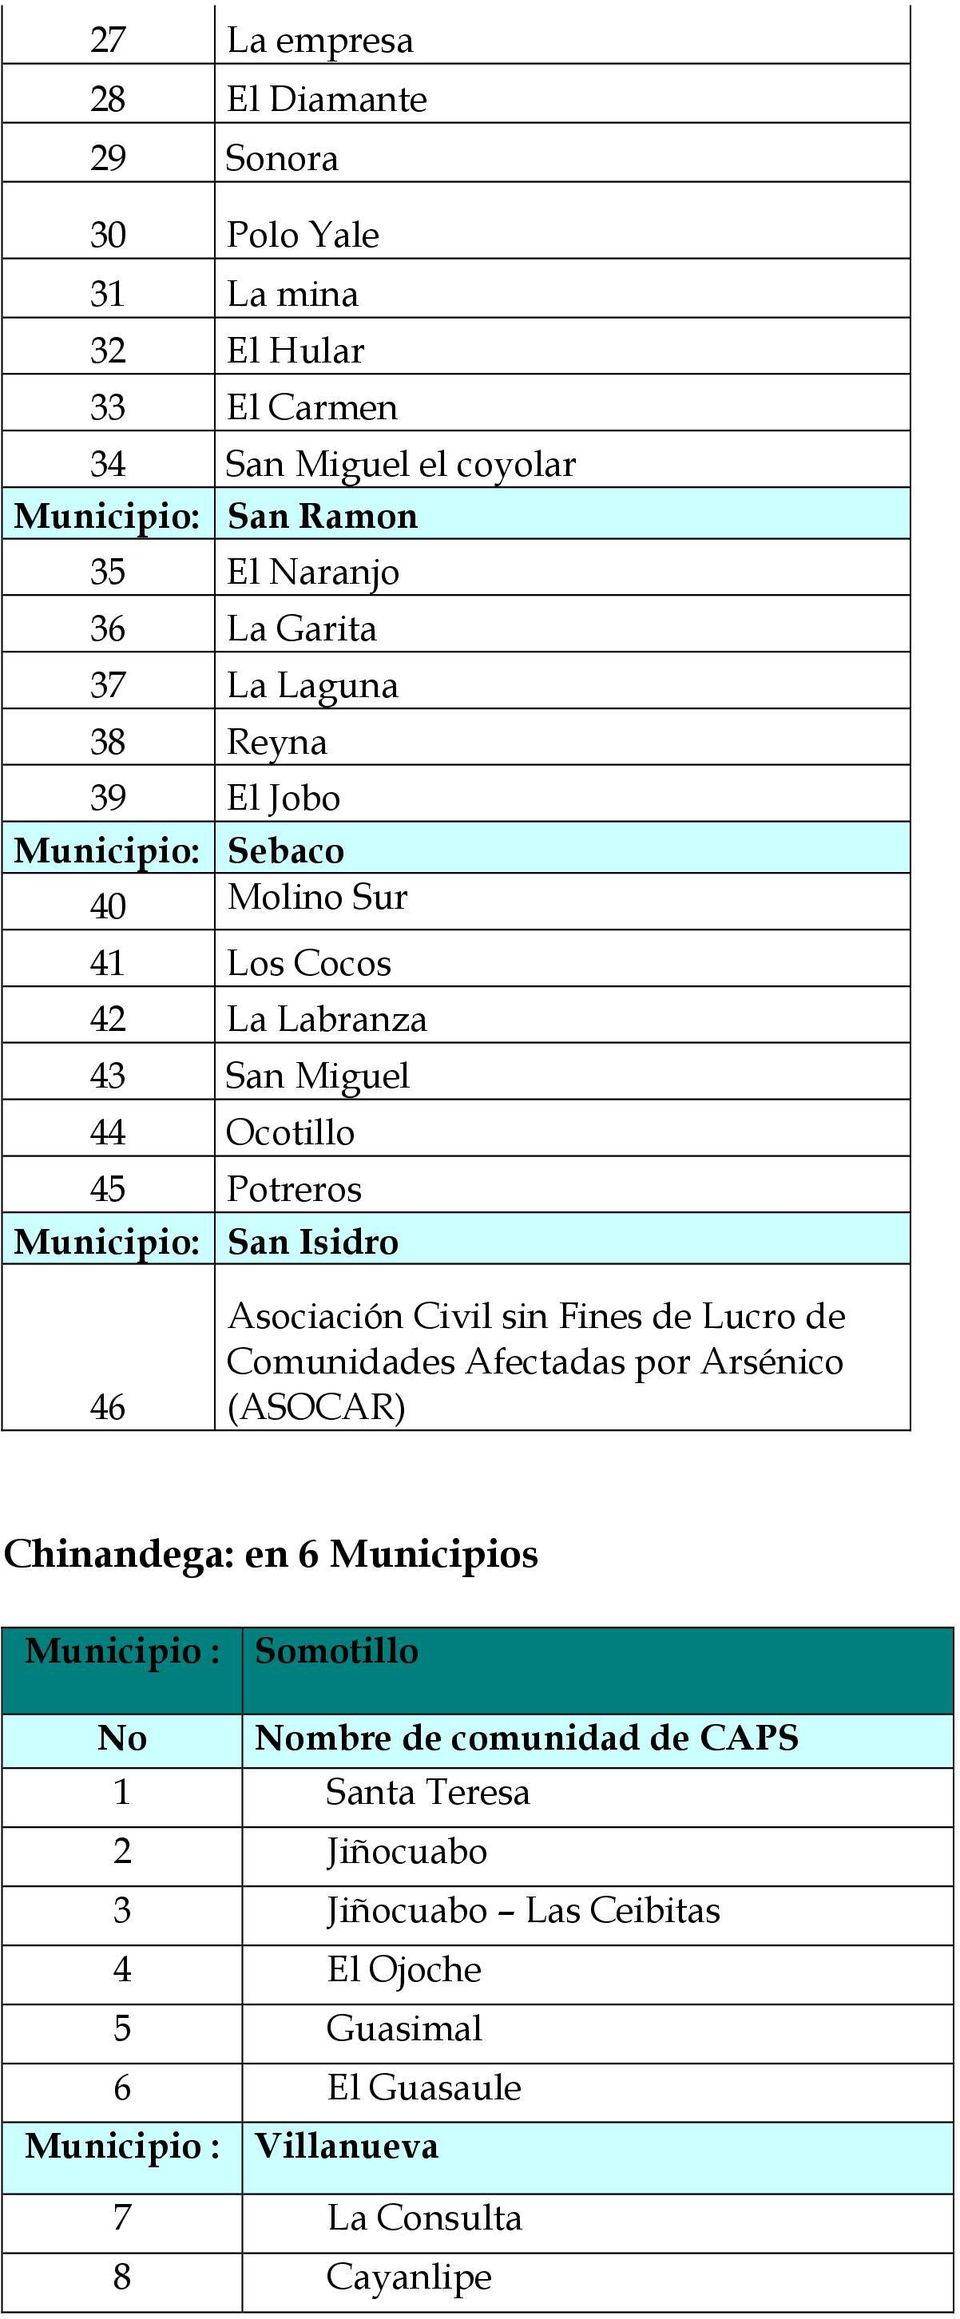 Isidro 46 Asociación Civil sin Fines de Lucro de Comunidades Afectadas por Arsénico (ASOCAR) Chinandega: en 6 Municipios Municipio : Somotillo No Nombre